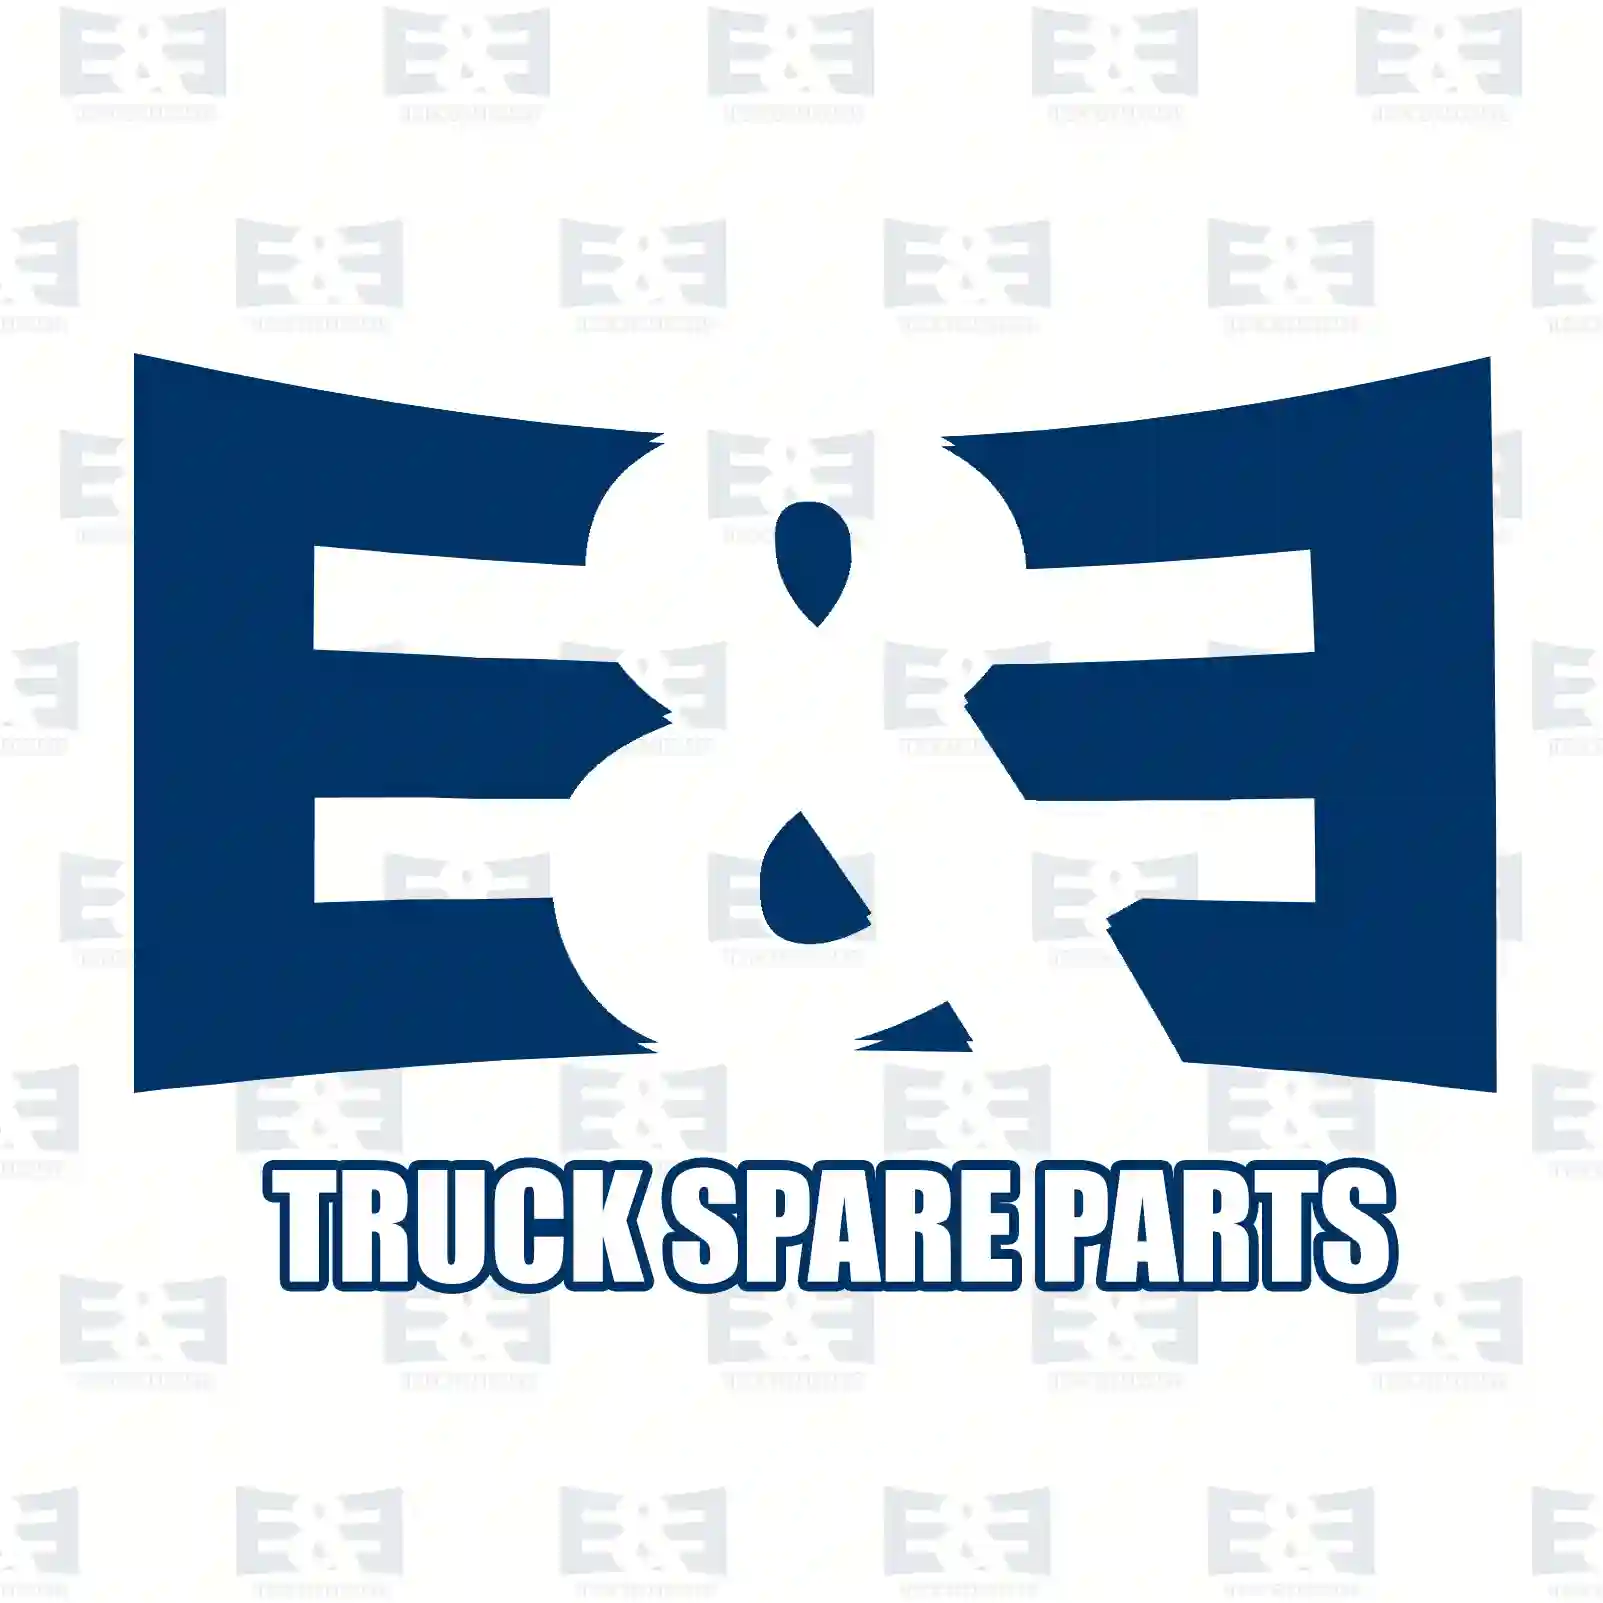 Cabin tilt cylinder, 2E2275683, 5010067647, , , , , , , , ||  2E2275683 E&E Truck Spare Parts | Truck Spare Parts, Auotomotive Spare Parts Cabin tilt cylinder, 2E2275683, 5010067647, , , , , , , , ||  2E2275683 E&E Truck Spare Parts | Truck Spare Parts, Auotomotive Spare Parts